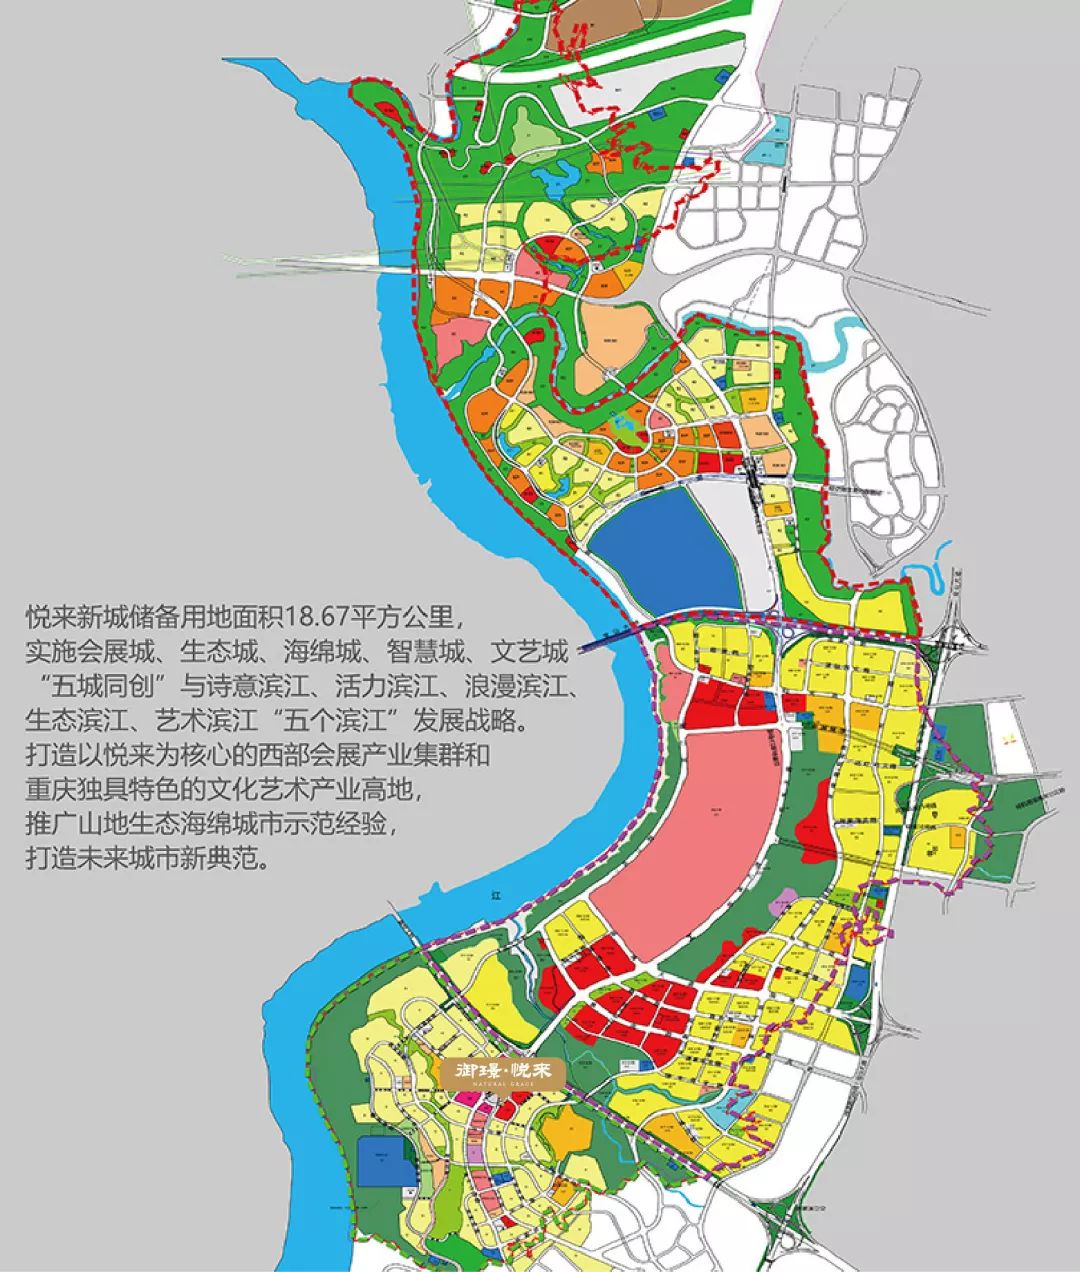 悦来作为重庆唯一全域tod规划区,合智慧城,会展城,生态城